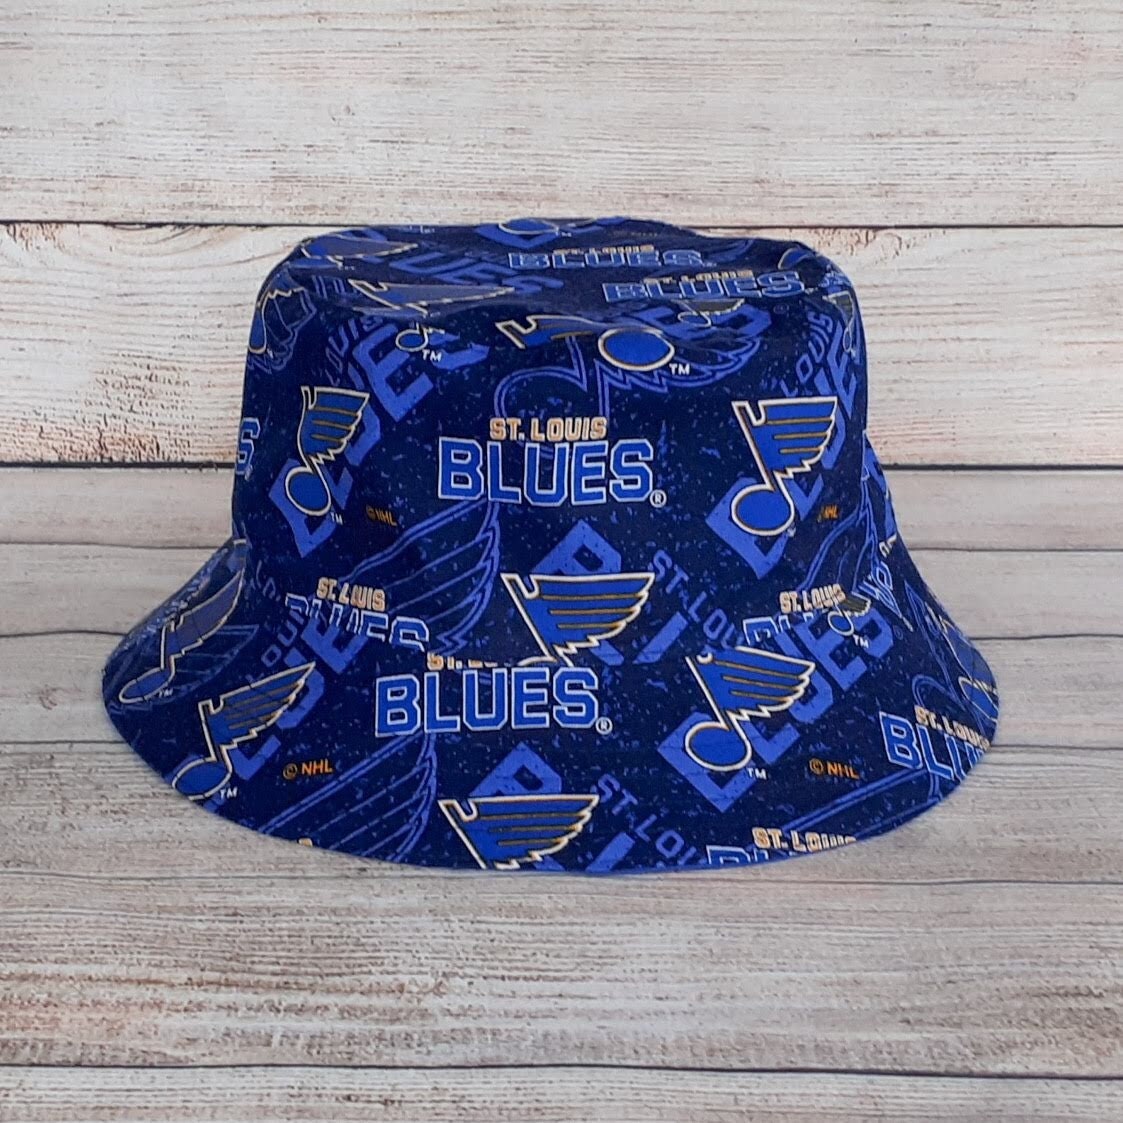 St. Louis Blues Sports Fan Hats